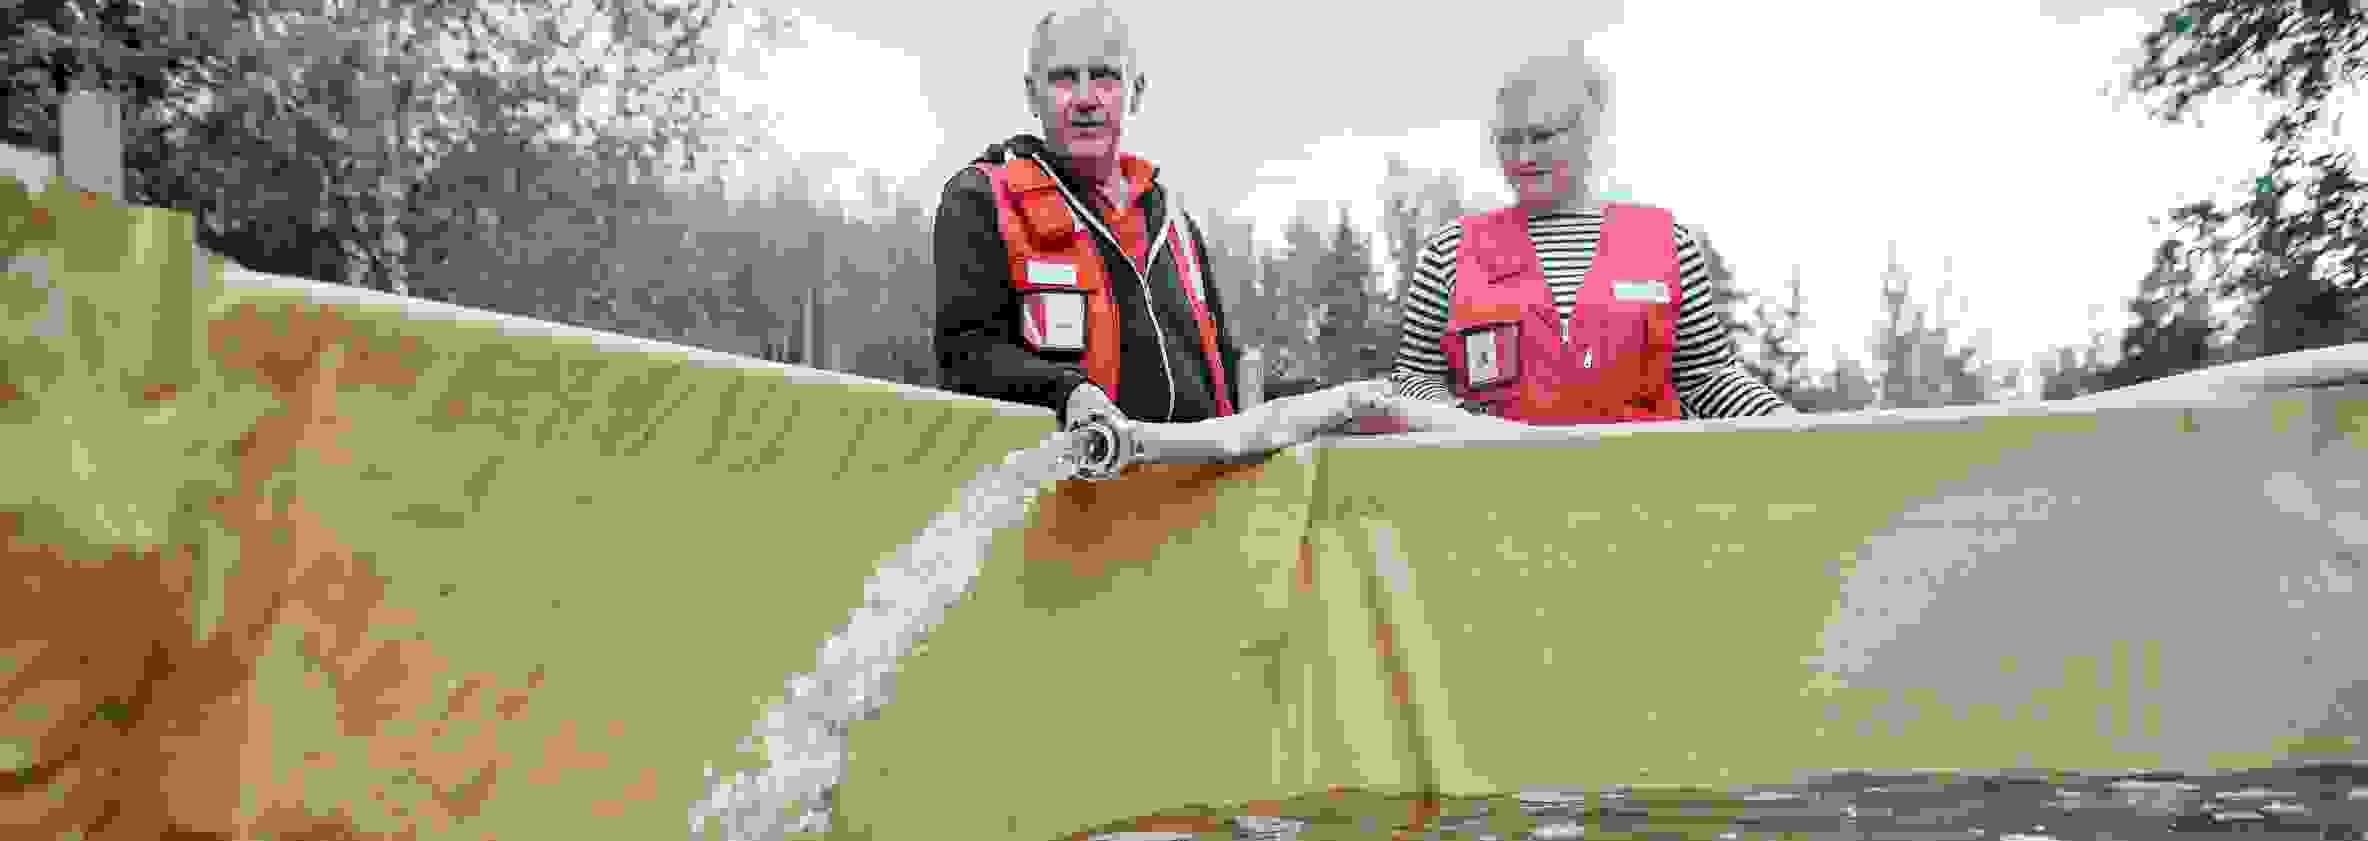 Kaksi henkilöä Punaisen Ristin varusteissa täyttää vesiallasta puhtaalla vedellä.